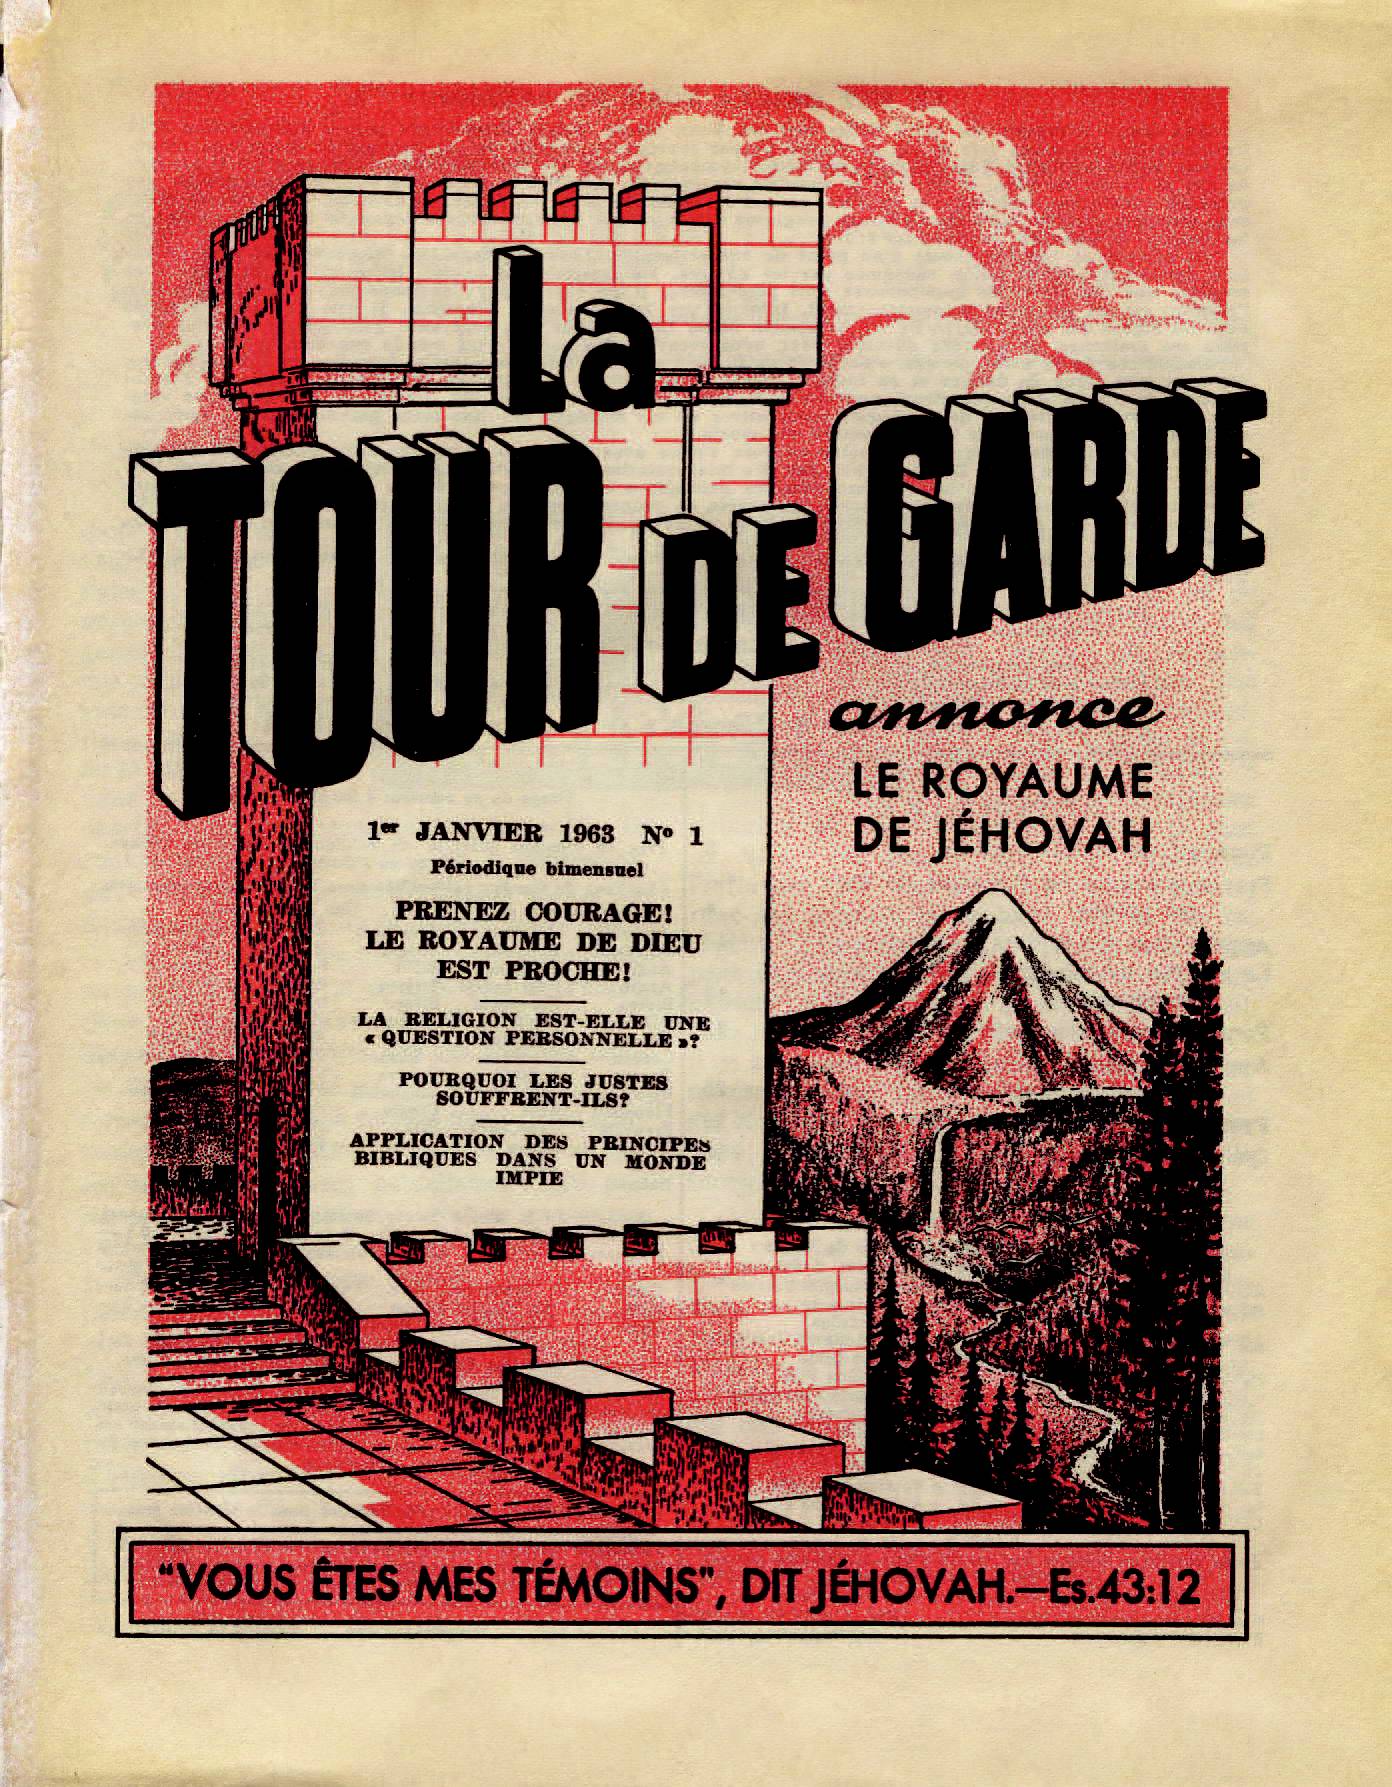 iLes autorités supérieures - Page 2 La-Tour-de-Garde-1-Janvier-1963-Cover